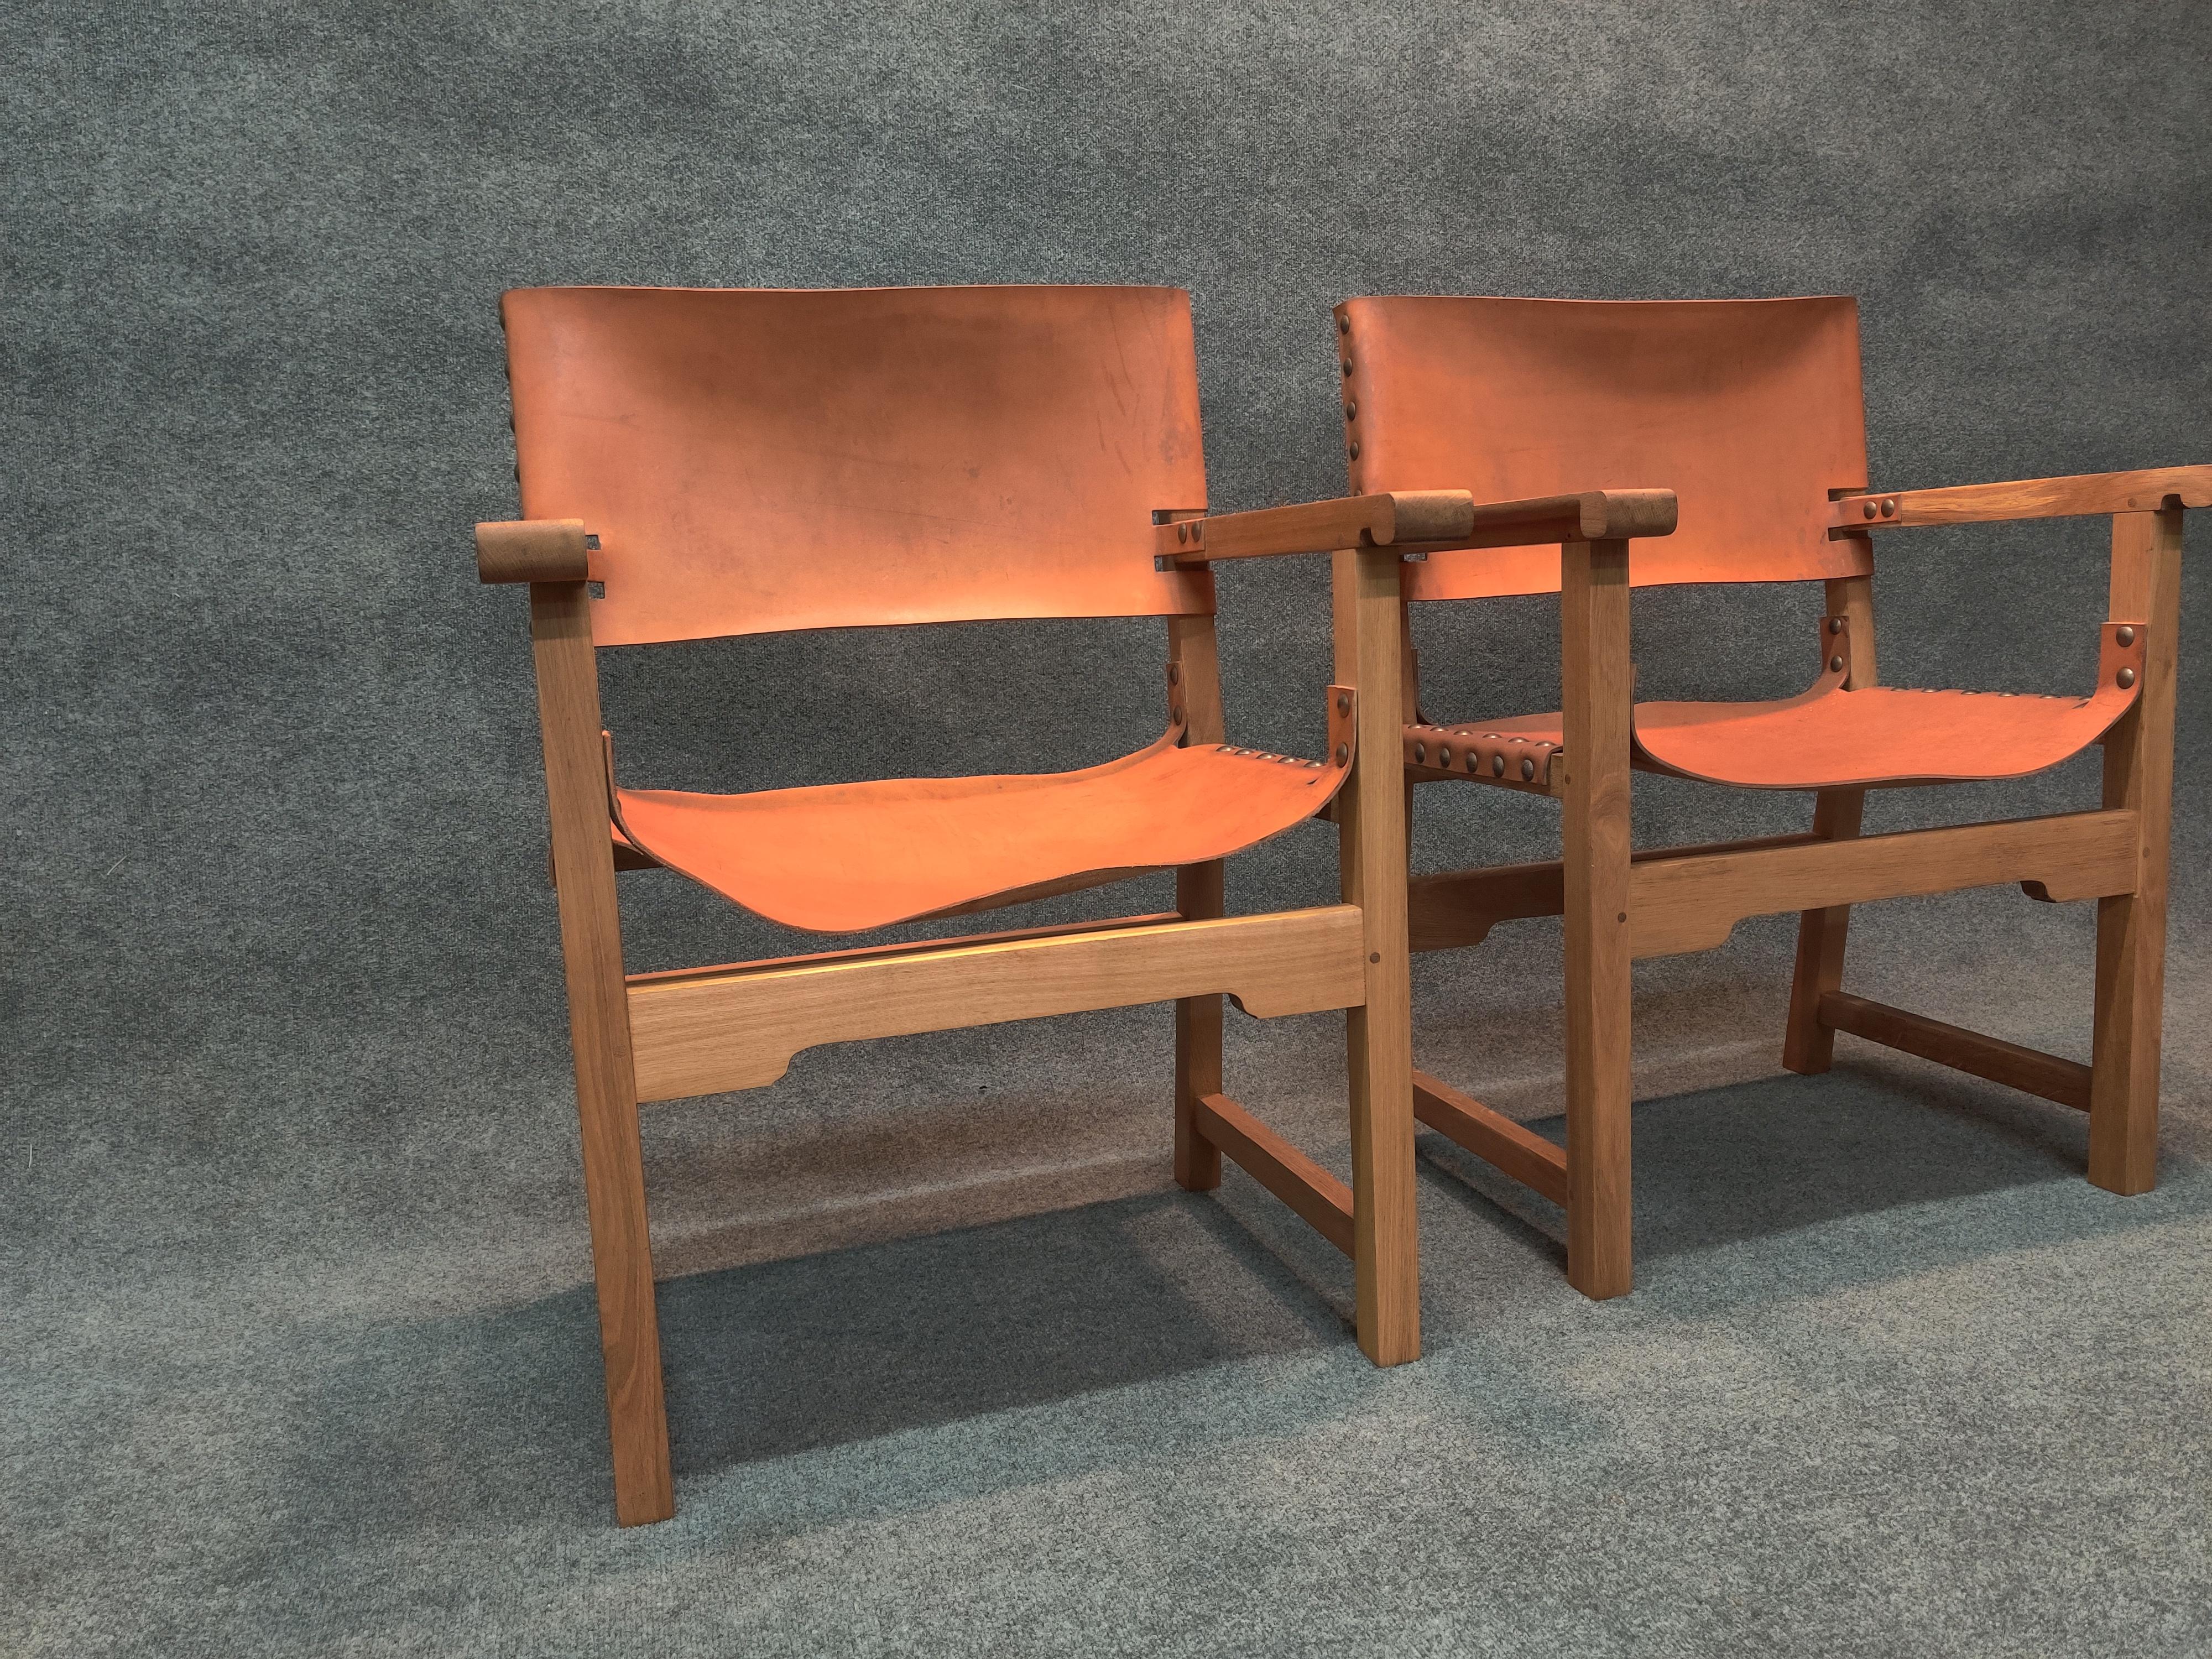 Zwei hübsche und gut verarbeitete Sessel im Stil eines Regisseurs. Hochwertige Konstruktion und Materialien sind offensichtlich. Die Rahmen sind aus naturbelassener Weißeiche gefertigt. Sitze und Rückenlehnen bestehen aus Sattelleder und sind mit